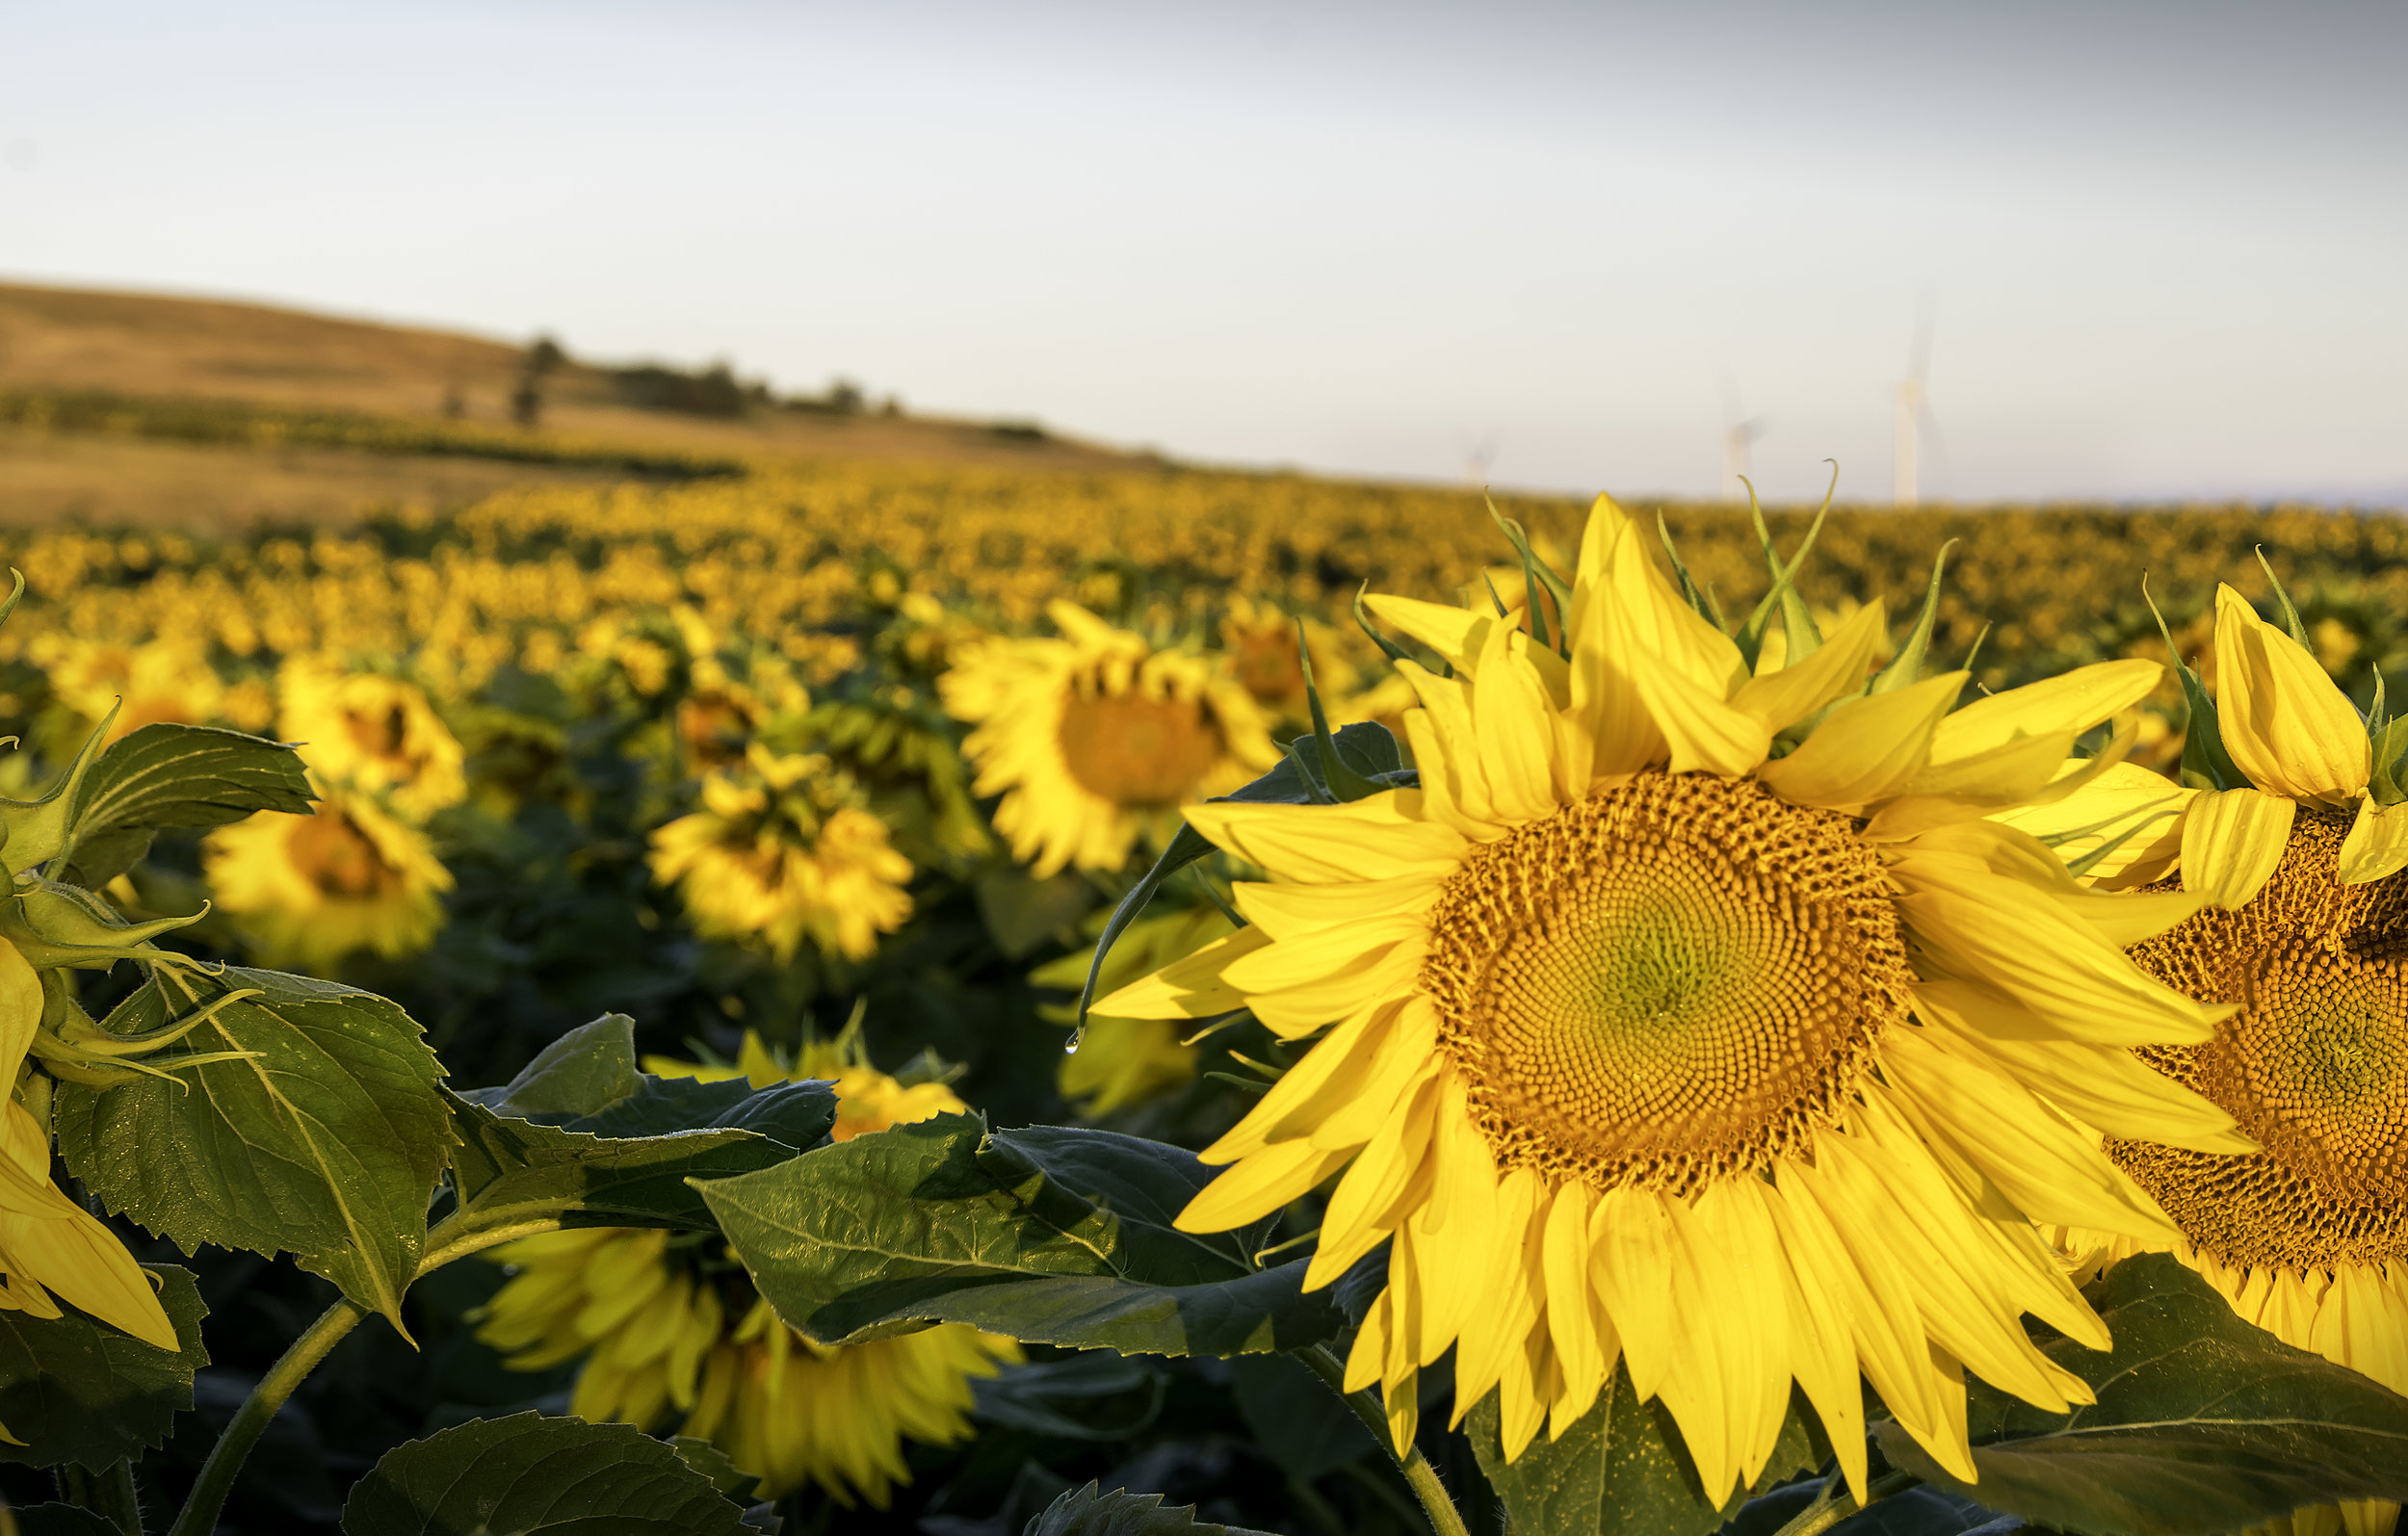 Sunflower 1.jpg